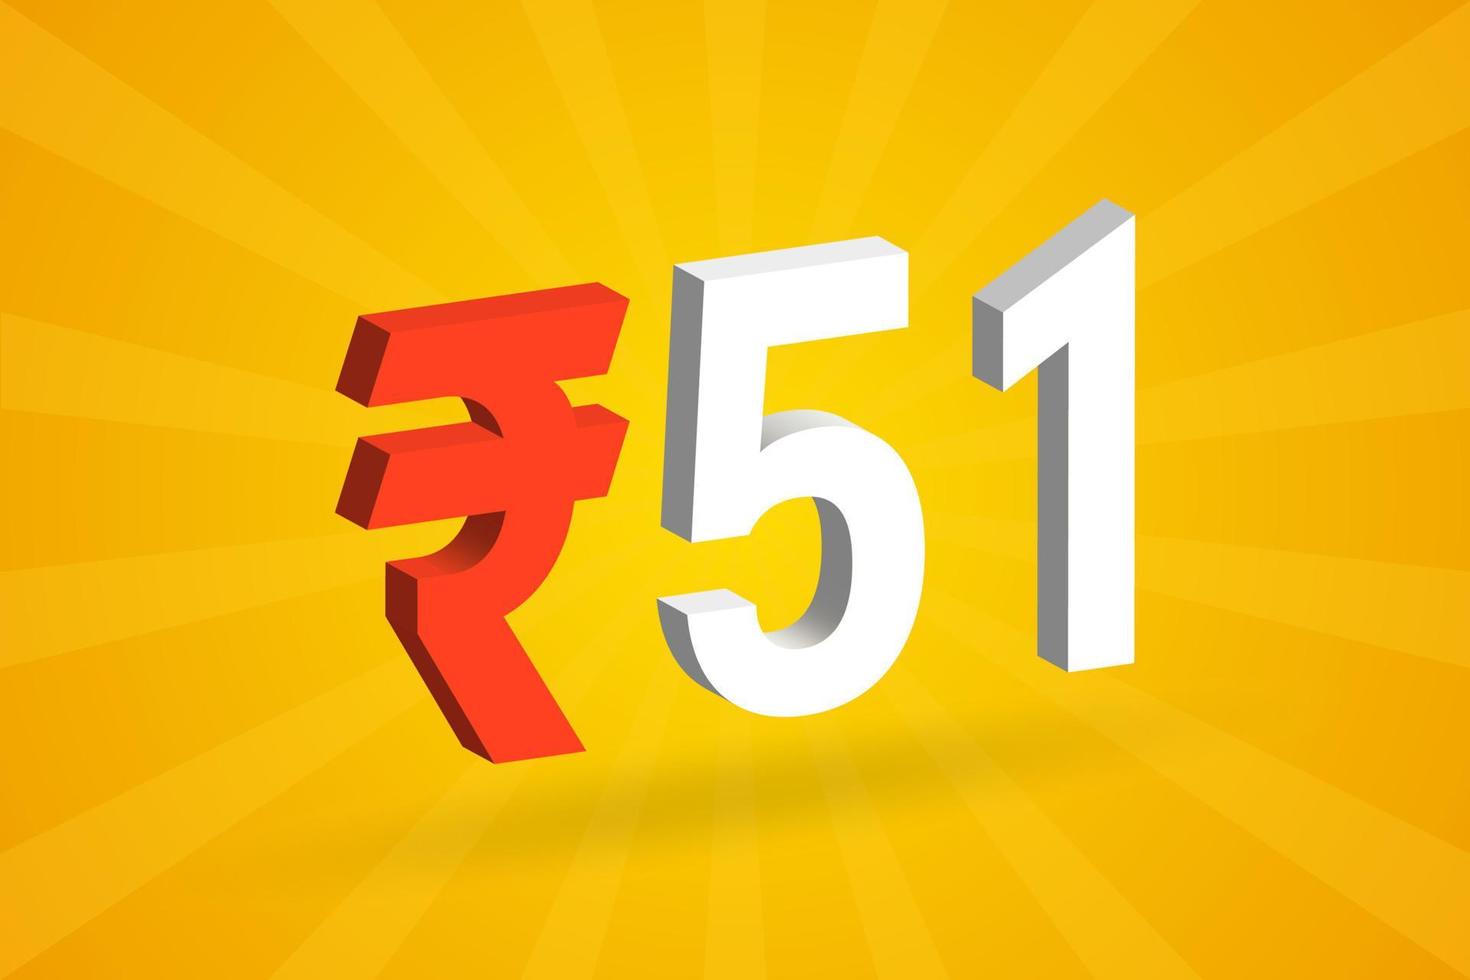 51 rupia símbolo 3d imagem de vetor de texto em negrito. 3d 51 rupia indiana ilustração vetorial de sinal de moeda